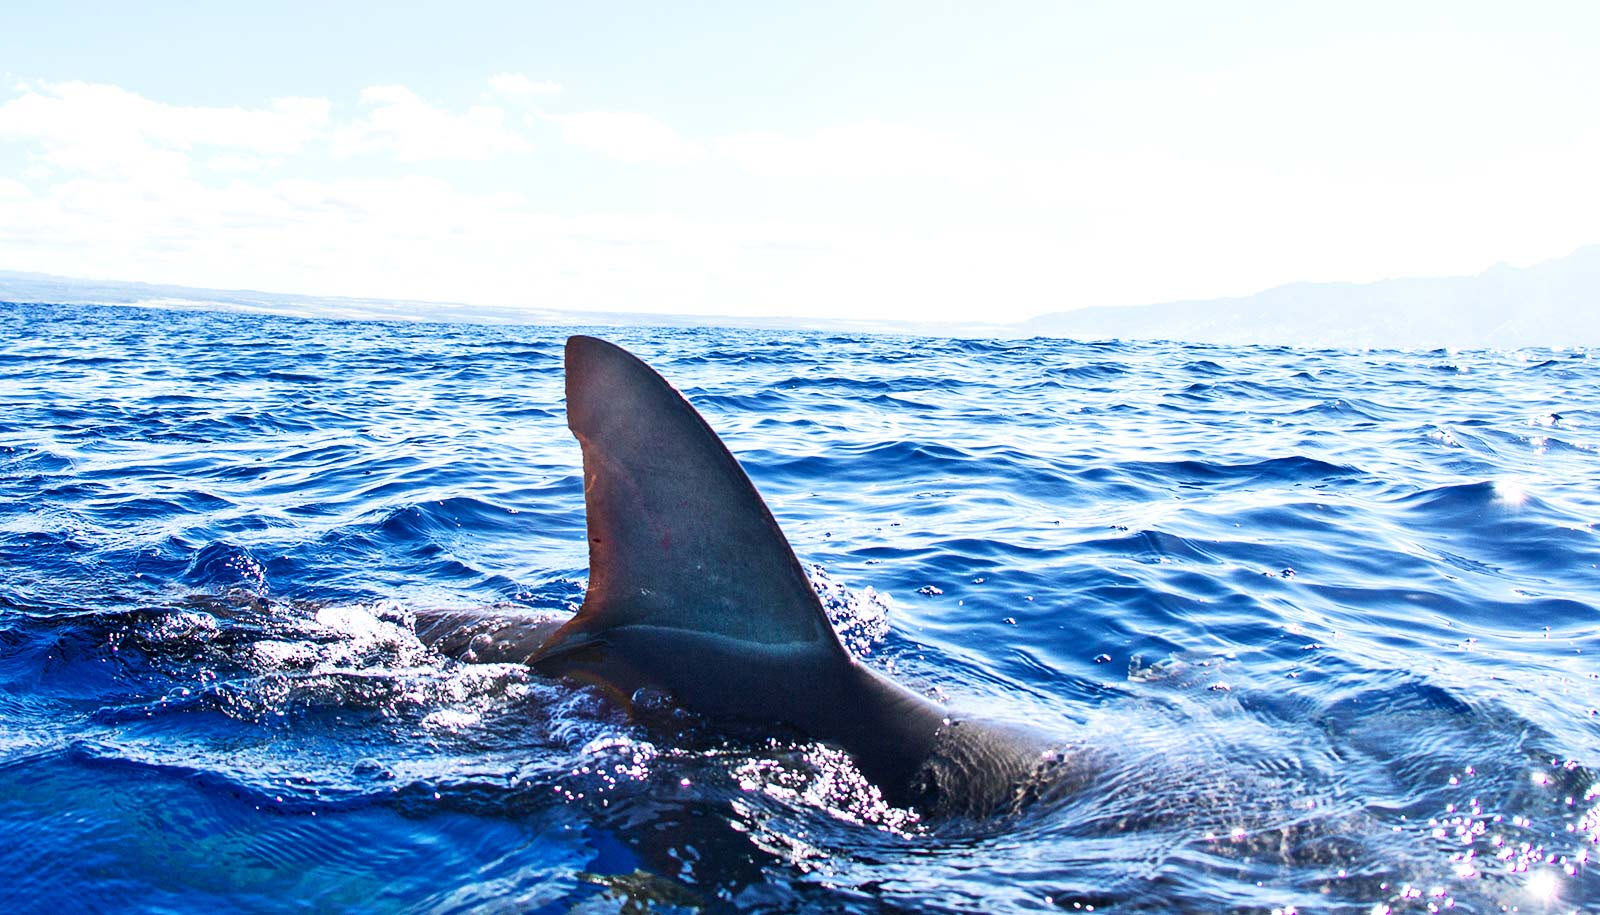 Proyecto de ley que prohíbe la venta de aletas de tiburón se presenta ante la Cámara de Representantes